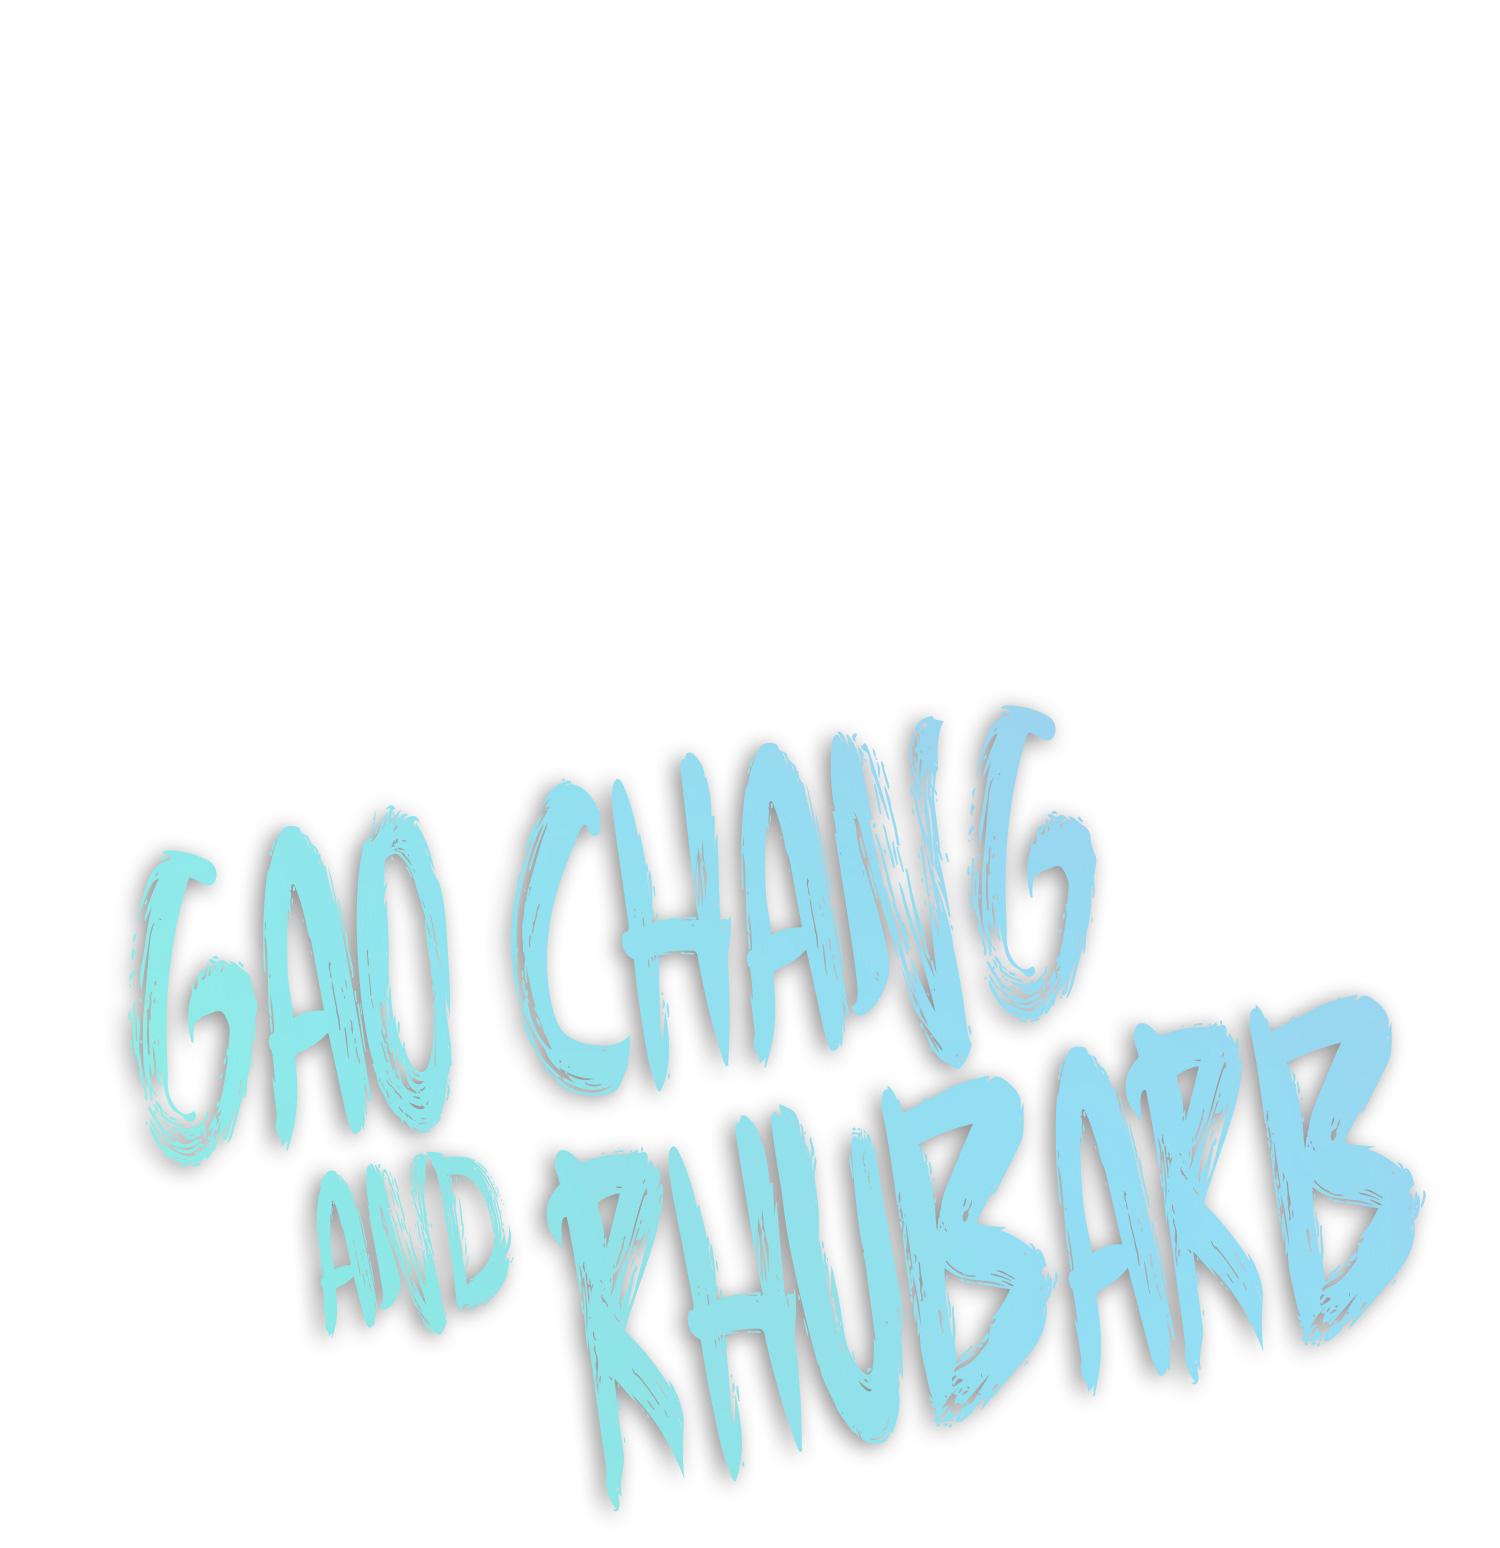 Gao Chang And Rhubarb - Page 1